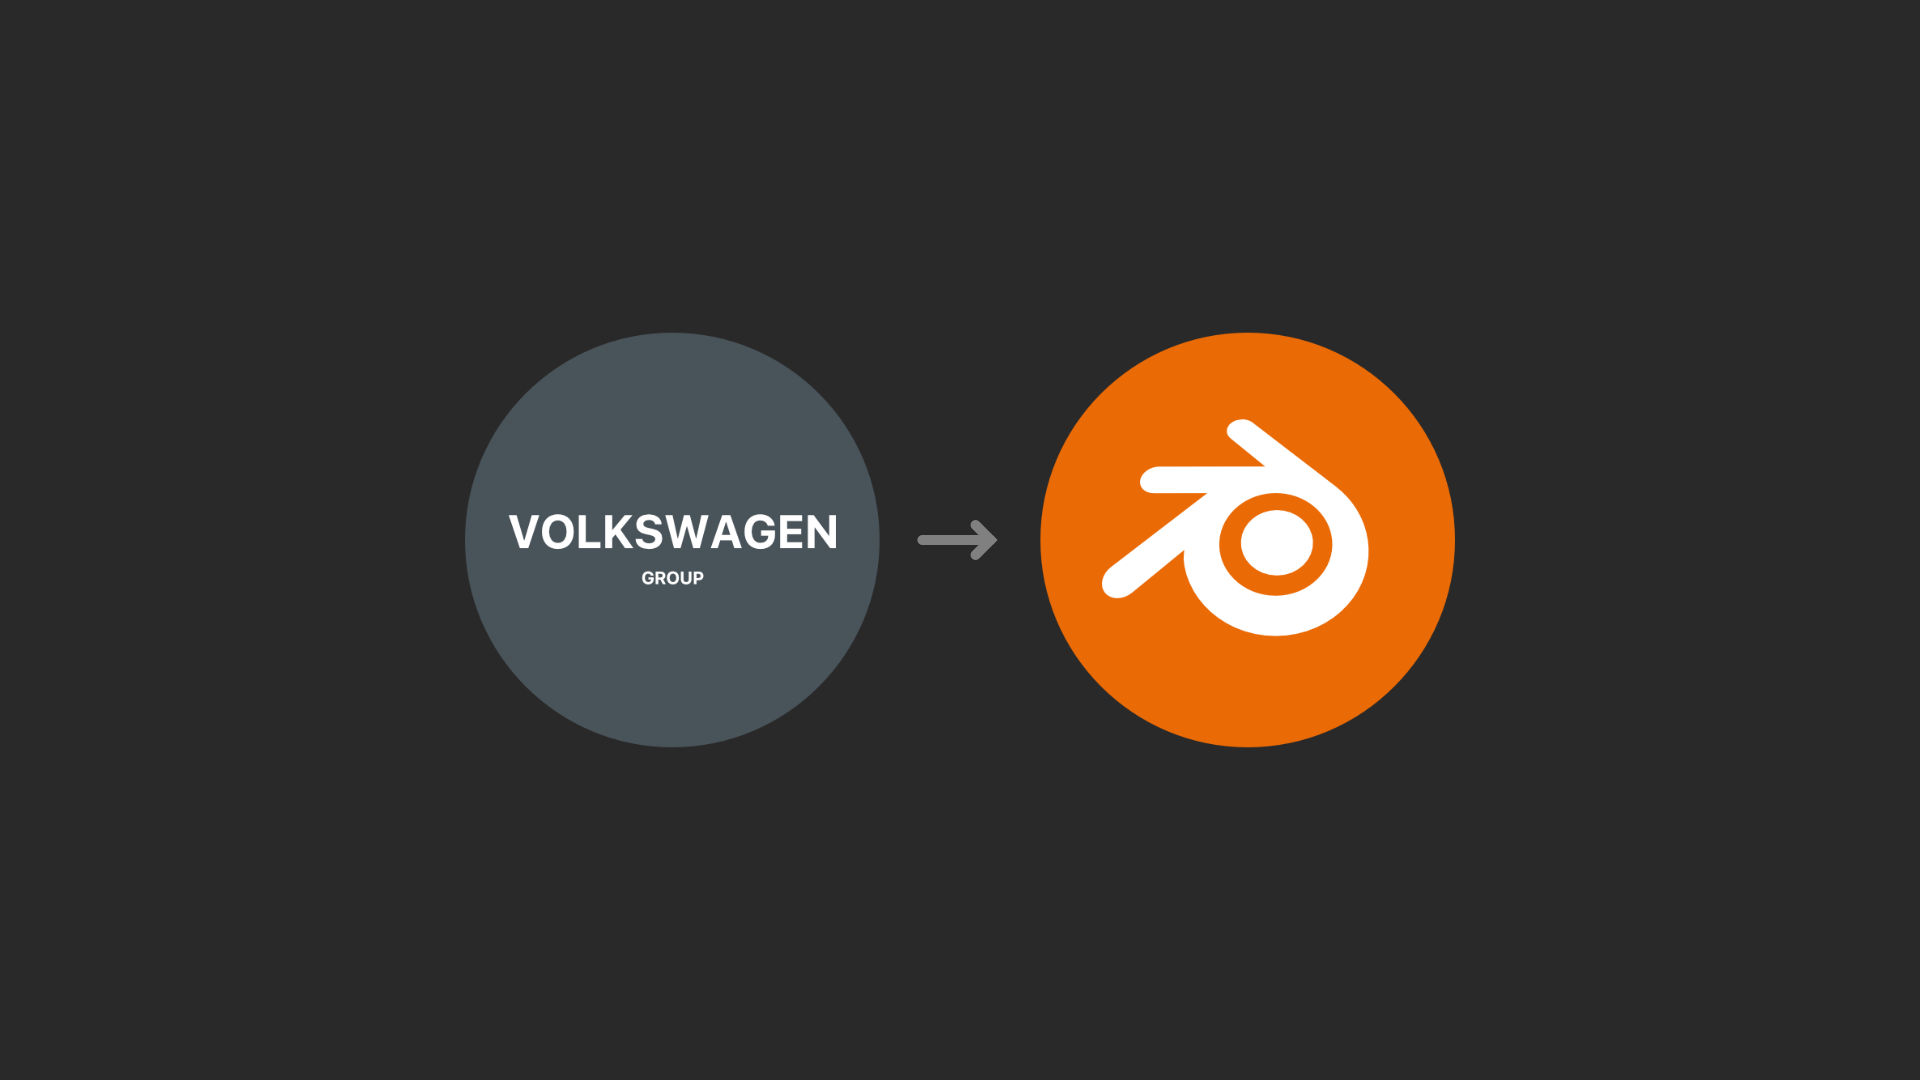 Volkswagen Group 大众集团 → Blender 加入赞助.png